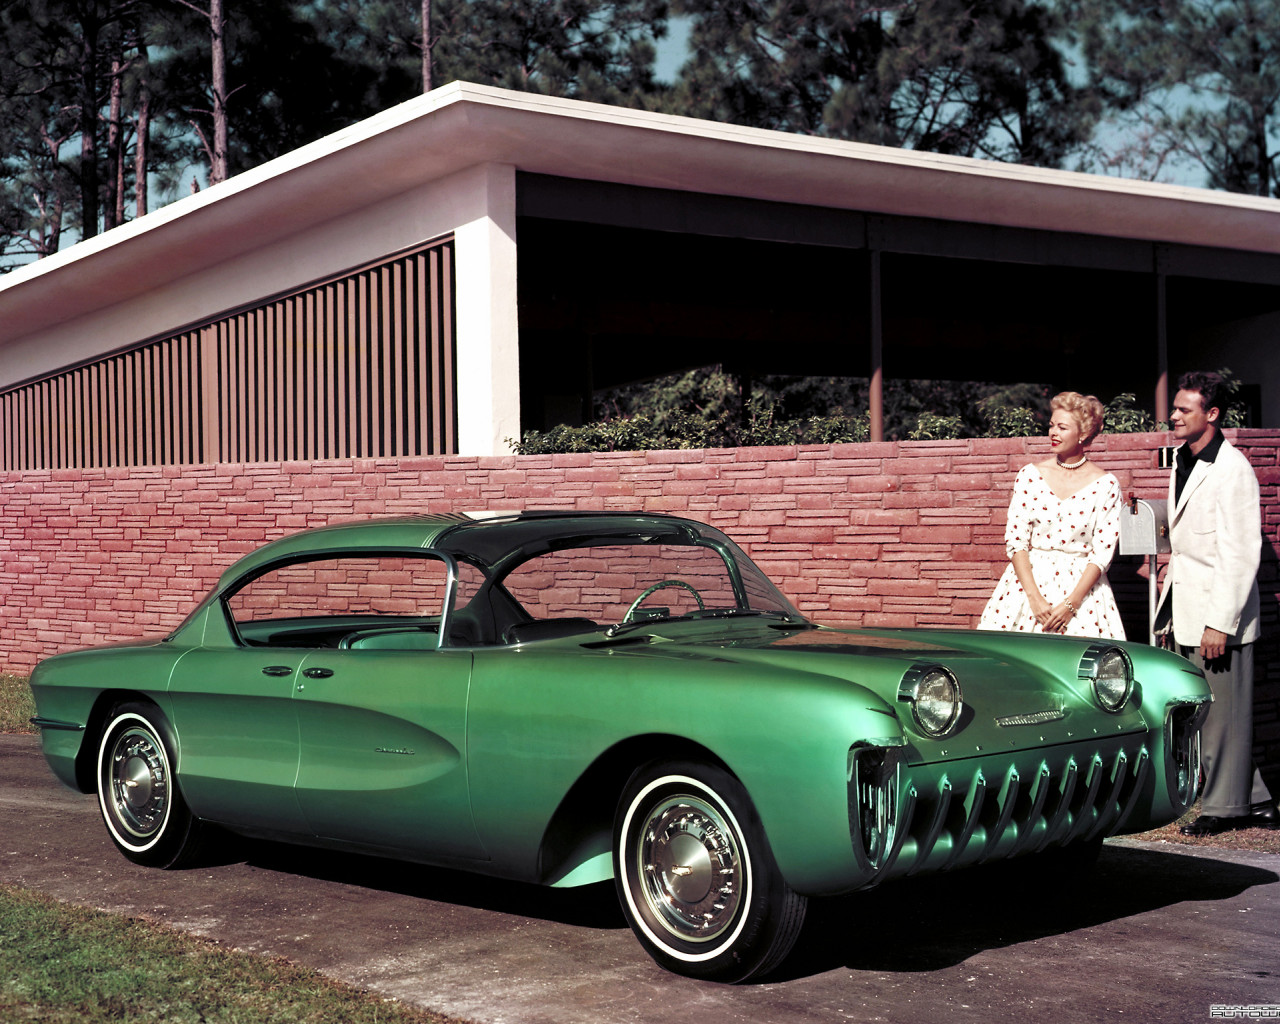 Chevrolet Biscayne Concept Car '1955.jpg